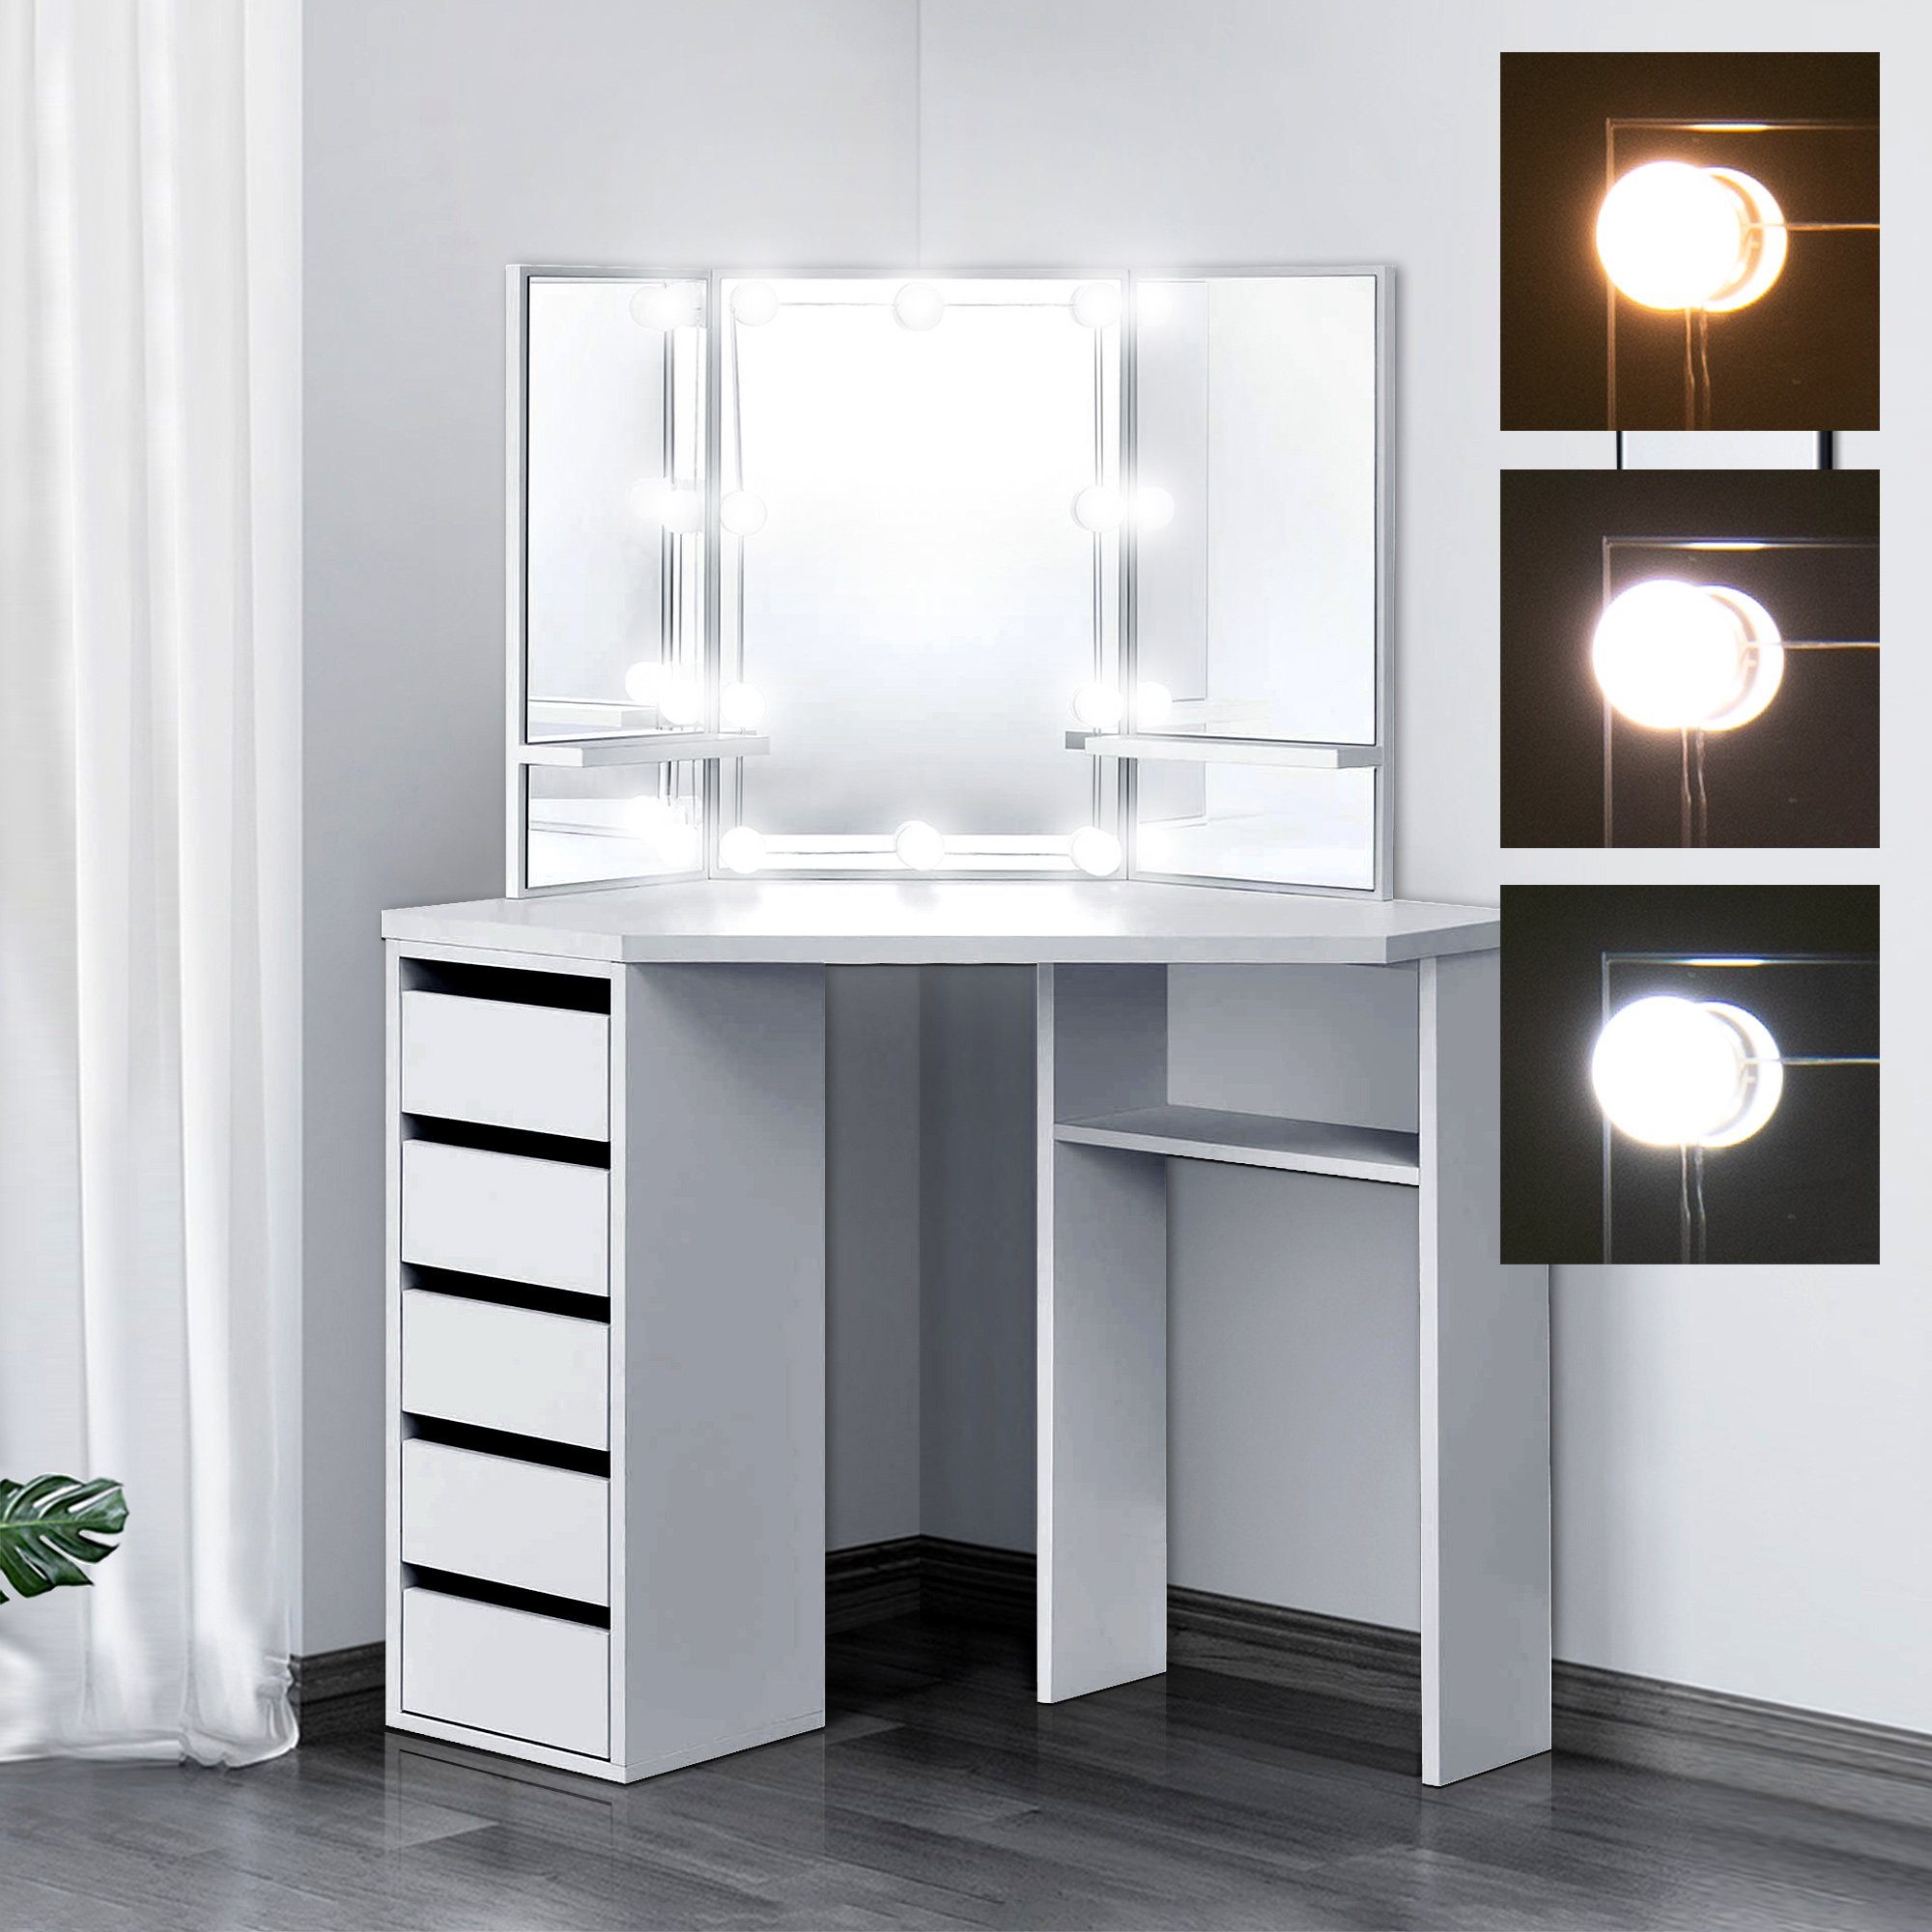 ML-DESIGN Schminktisch Frisiertisch Kosmetiktisch Ablagefächern Frisierkommode Weiß Tisch, 110x141,5x54cm LED-Beleuchtung Schubladen Spiegel Make-up